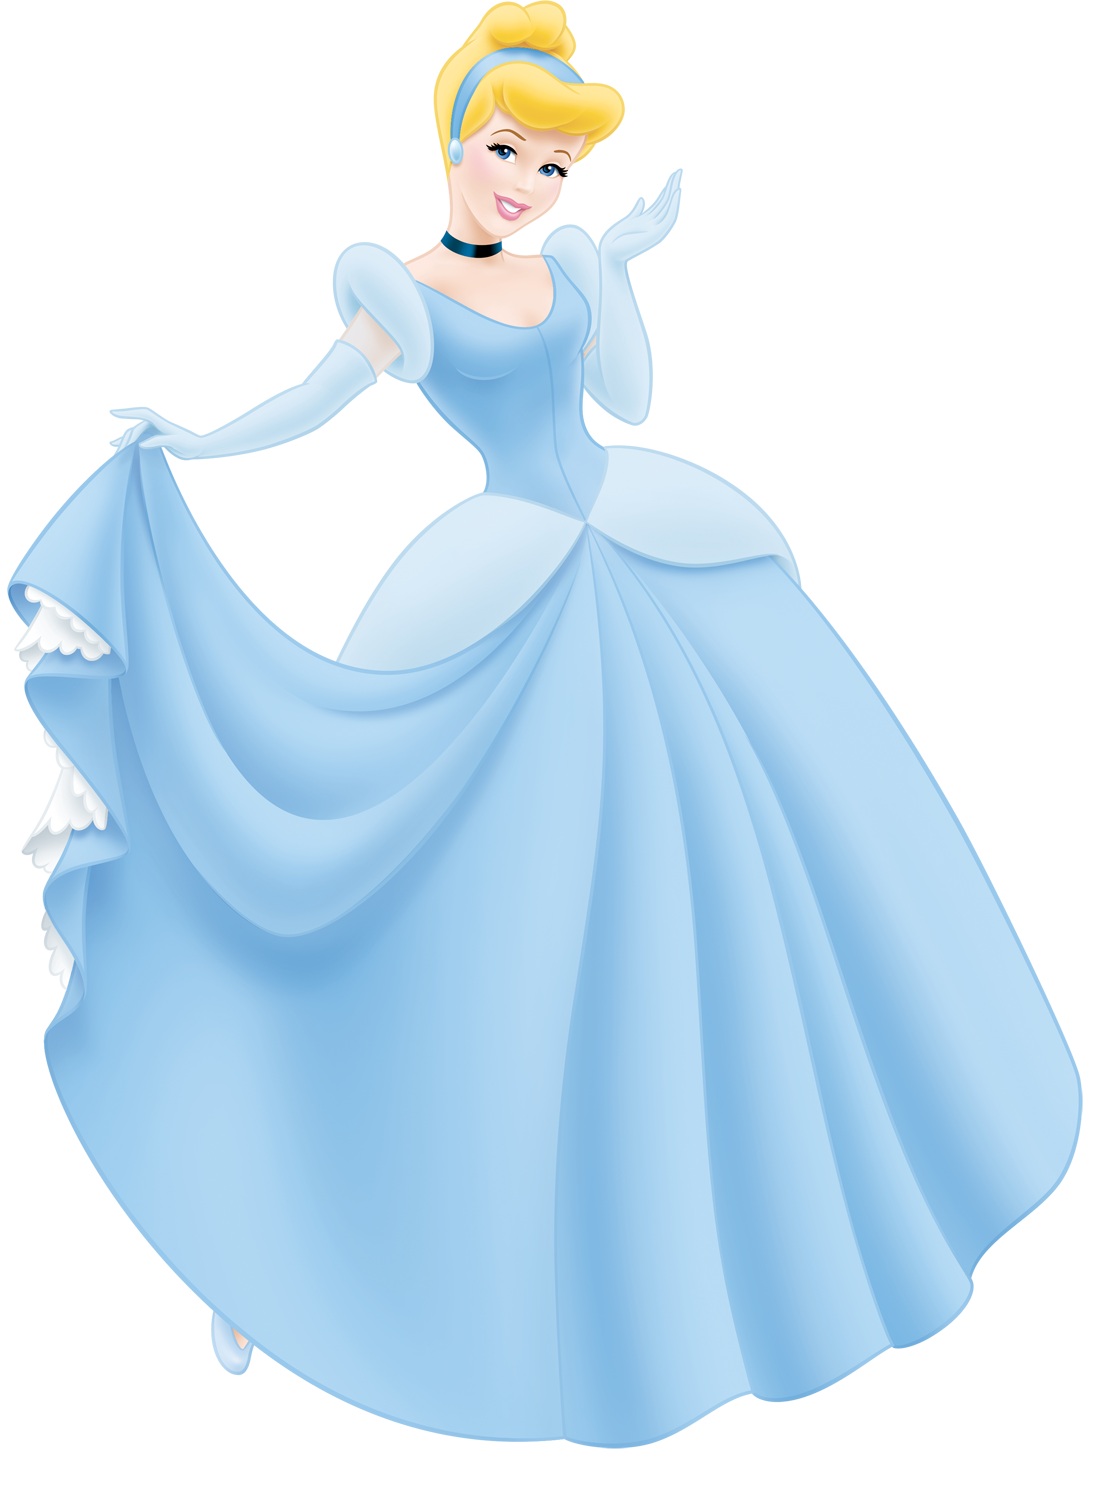 Another Cinderella   Disney Princess Photo  33150696    Fanpop